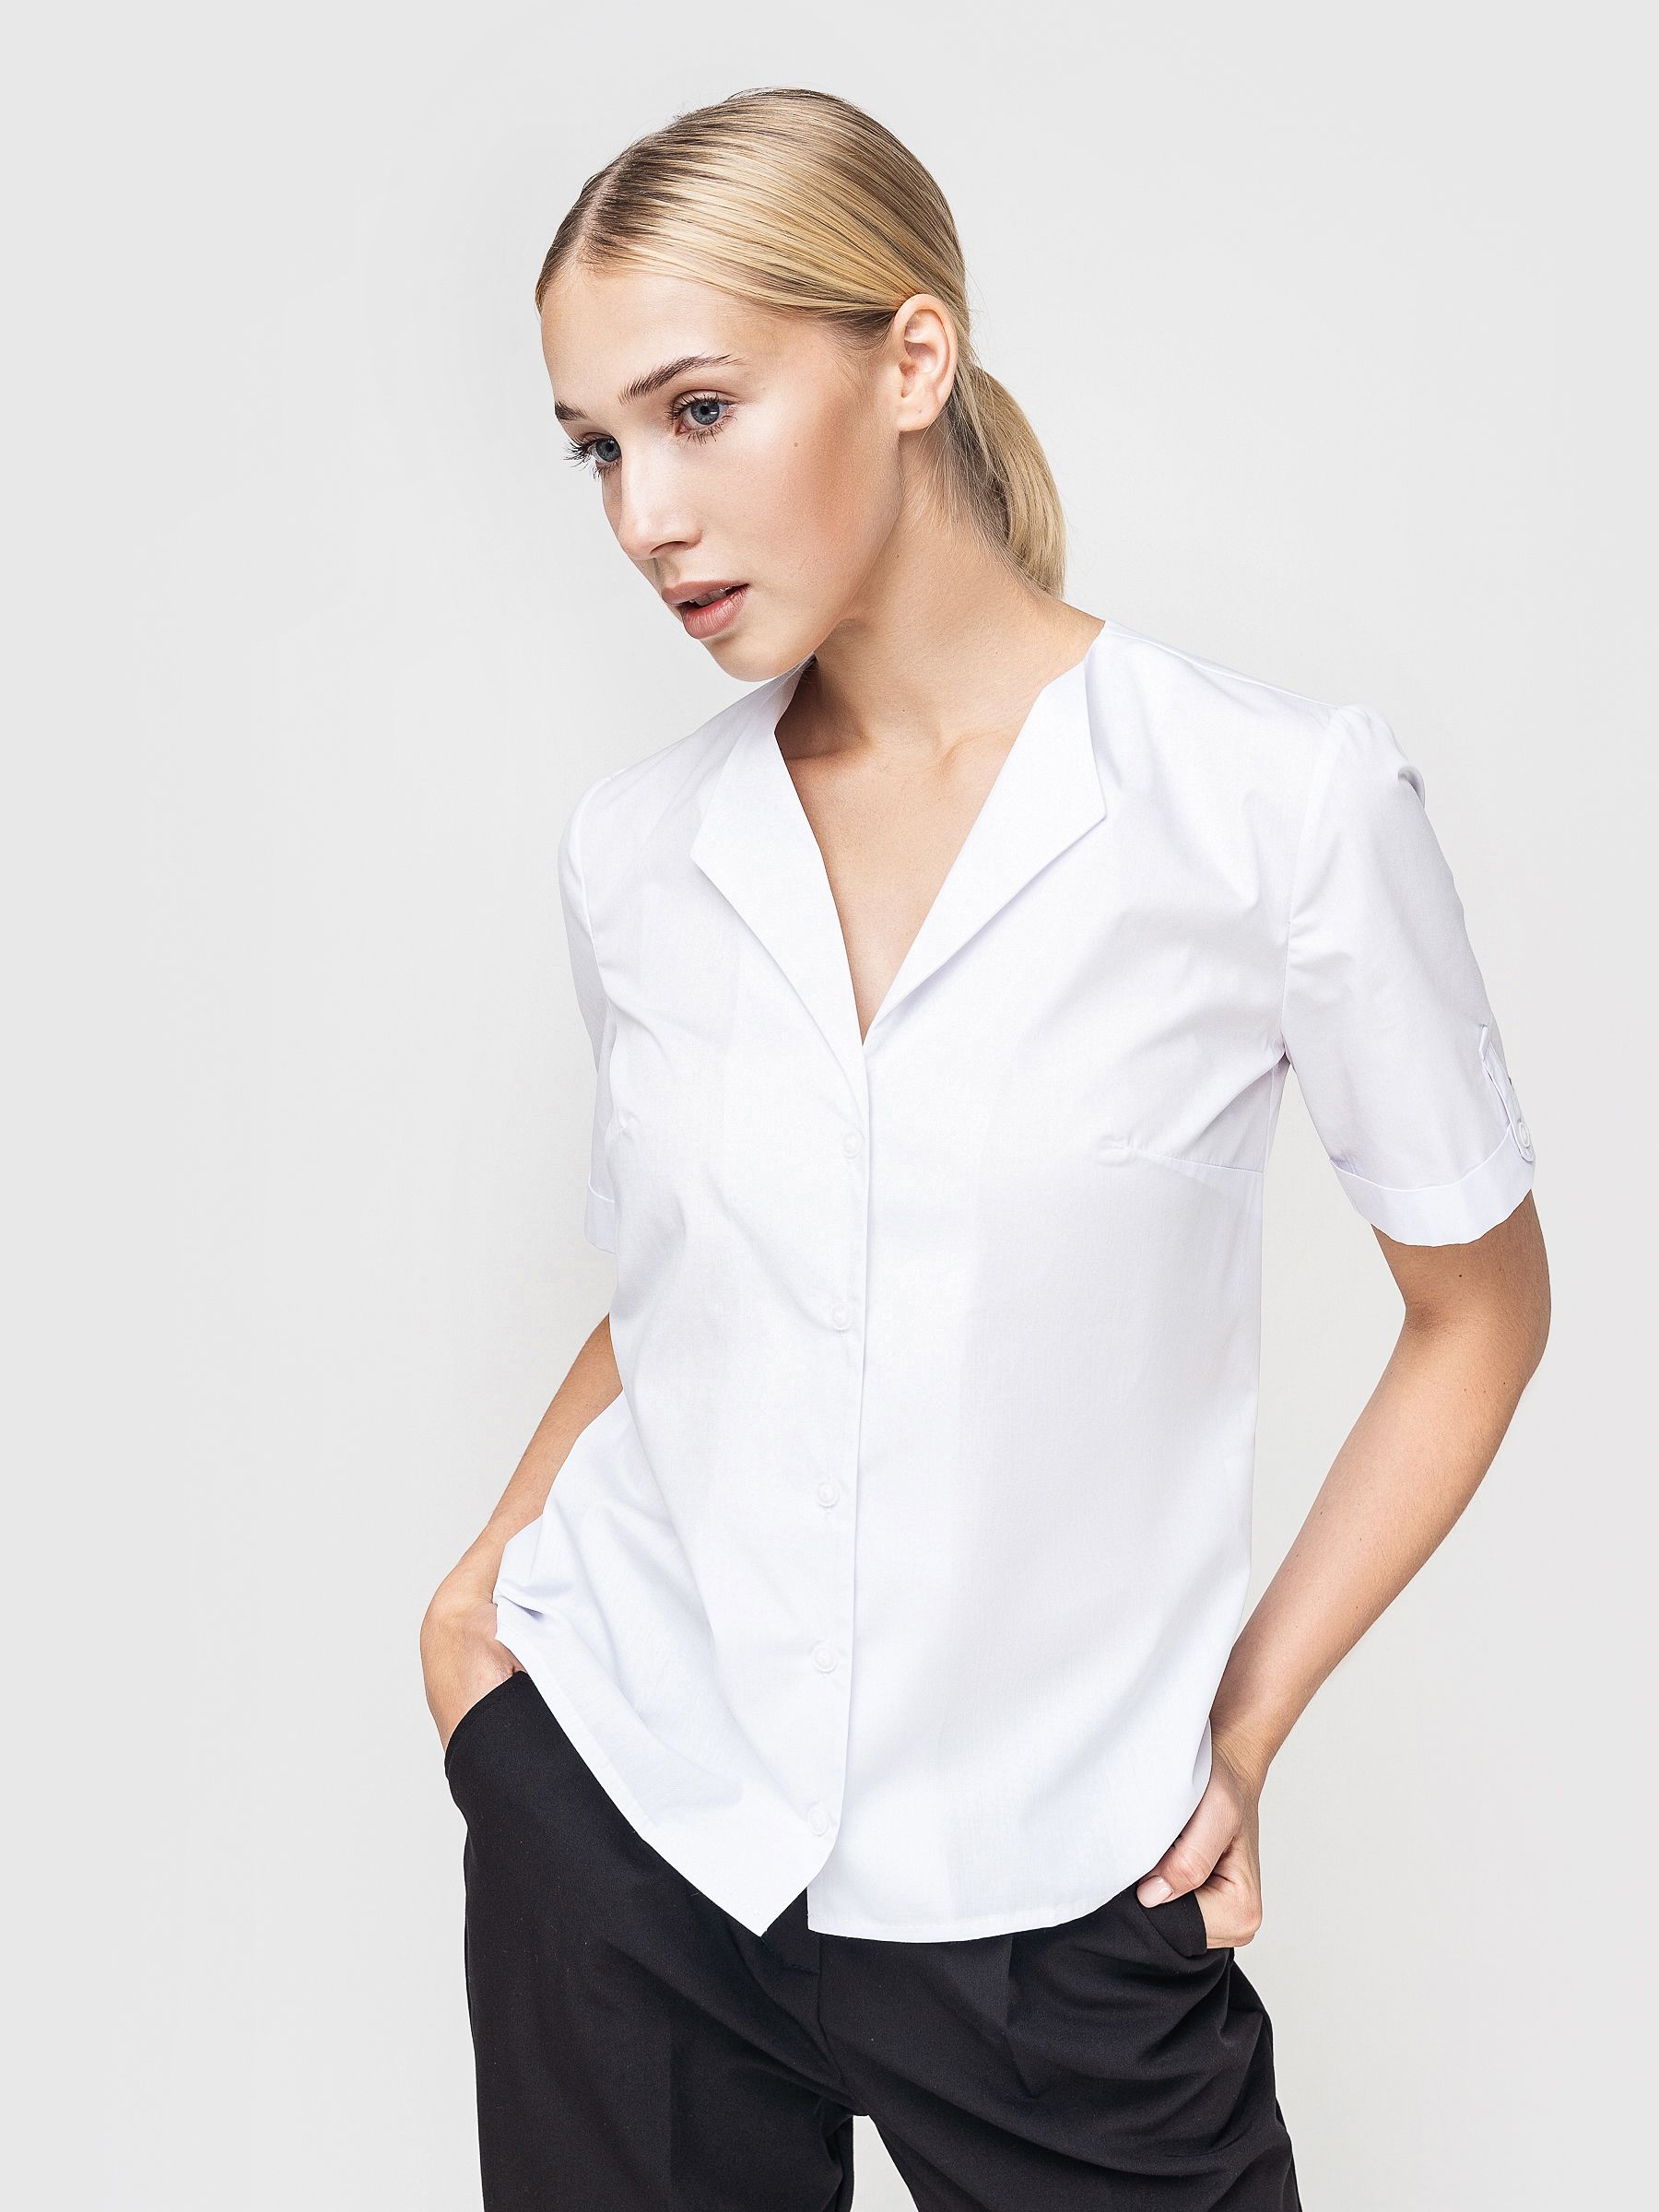 Рубашка женская AM One 6014/0 белая 52 RU